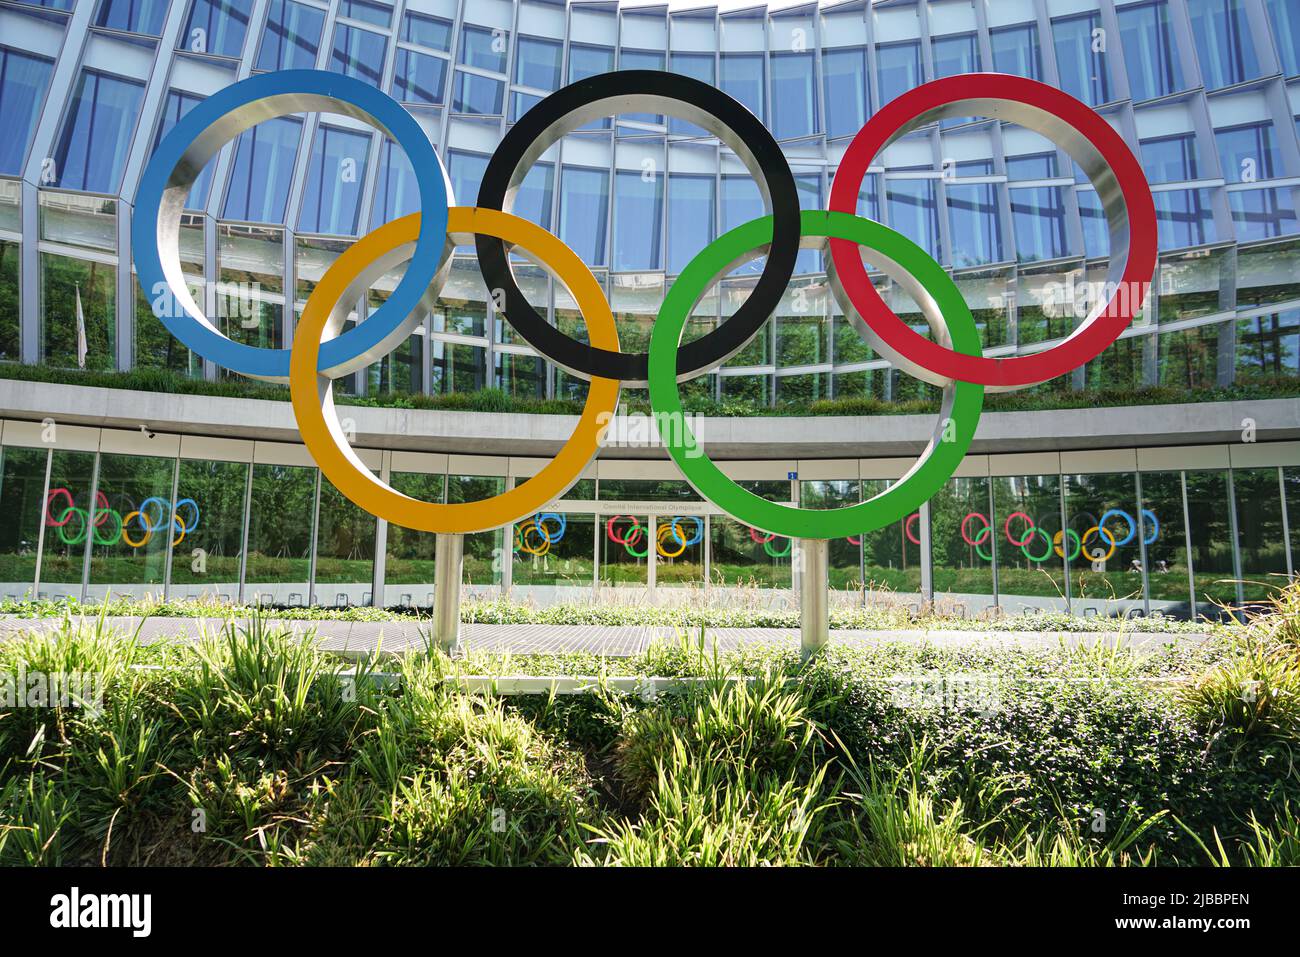 Hauptquartier Internationales Olympisches Komitee. Olympische Ringe. Lausanne, Schweiz - Juni 2022 Stockfoto